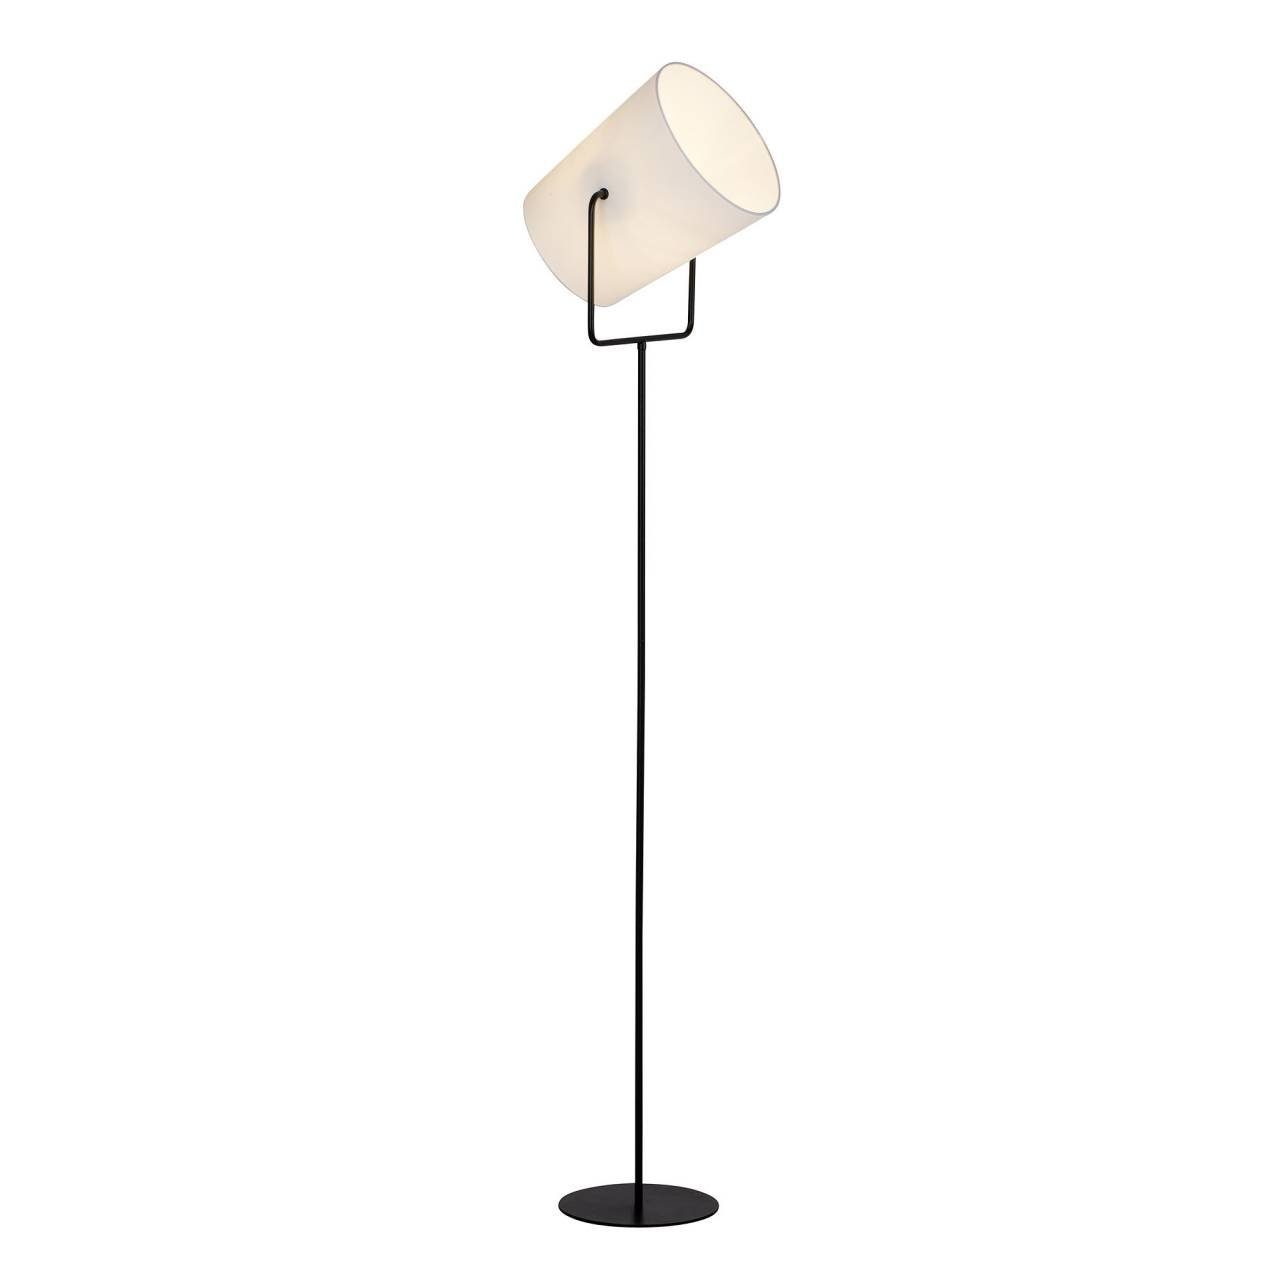 Brilliant Stehlampe Bucket, Lampe A60, E27, 1x Standleuchte schwarz/weiß 1flg geeign Bucket 60W